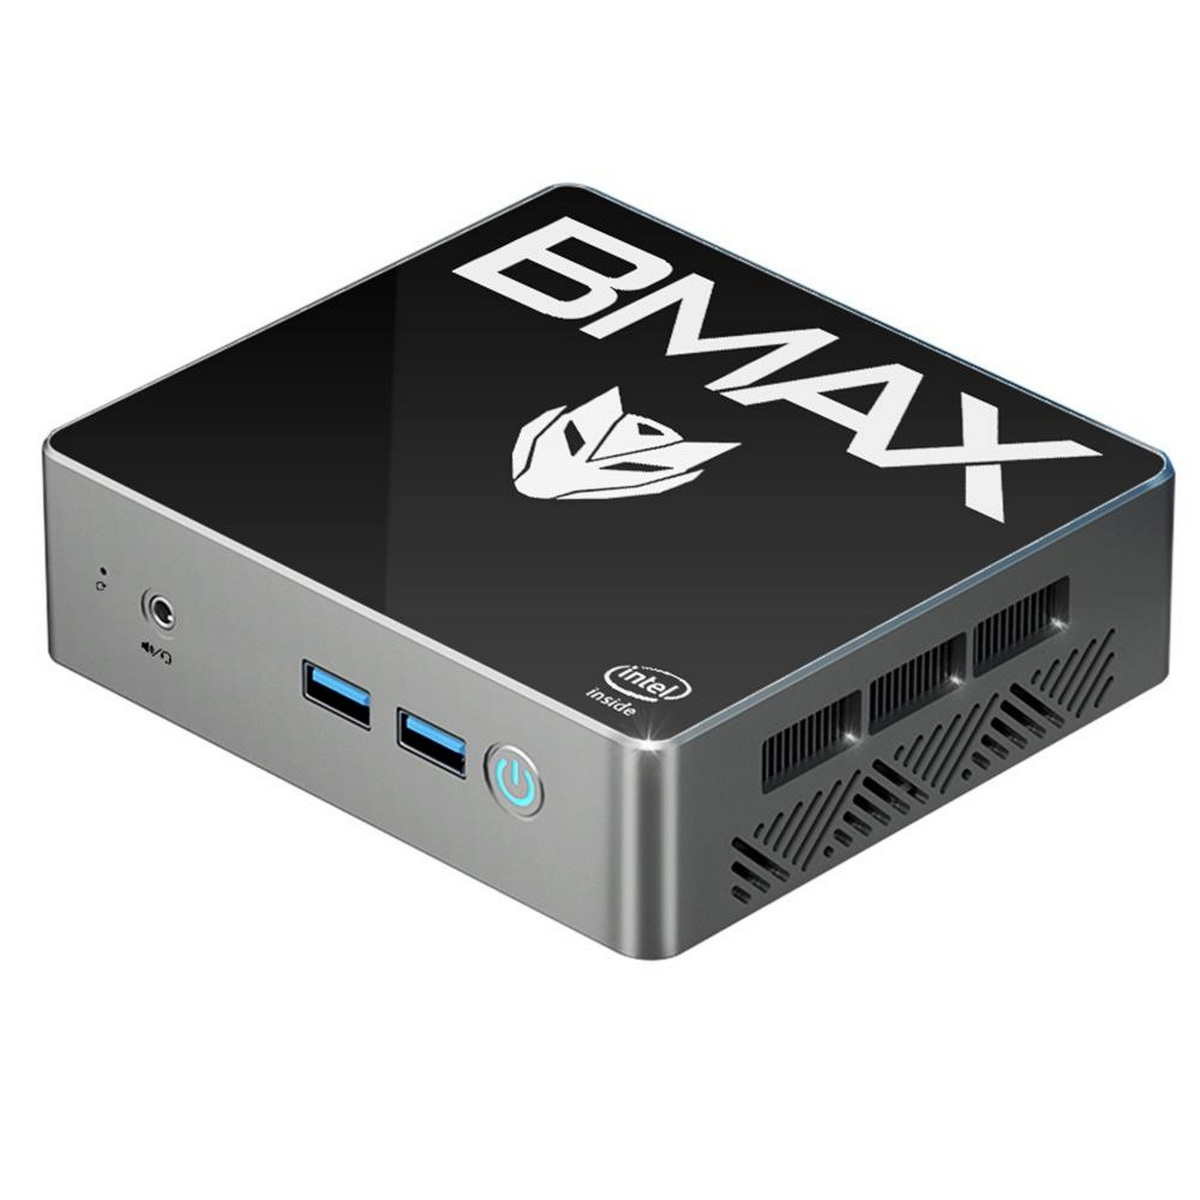 16 GB BMAX Graphics 512 Intel® UHD B4, SSD, GB RAM, Mini-PC,